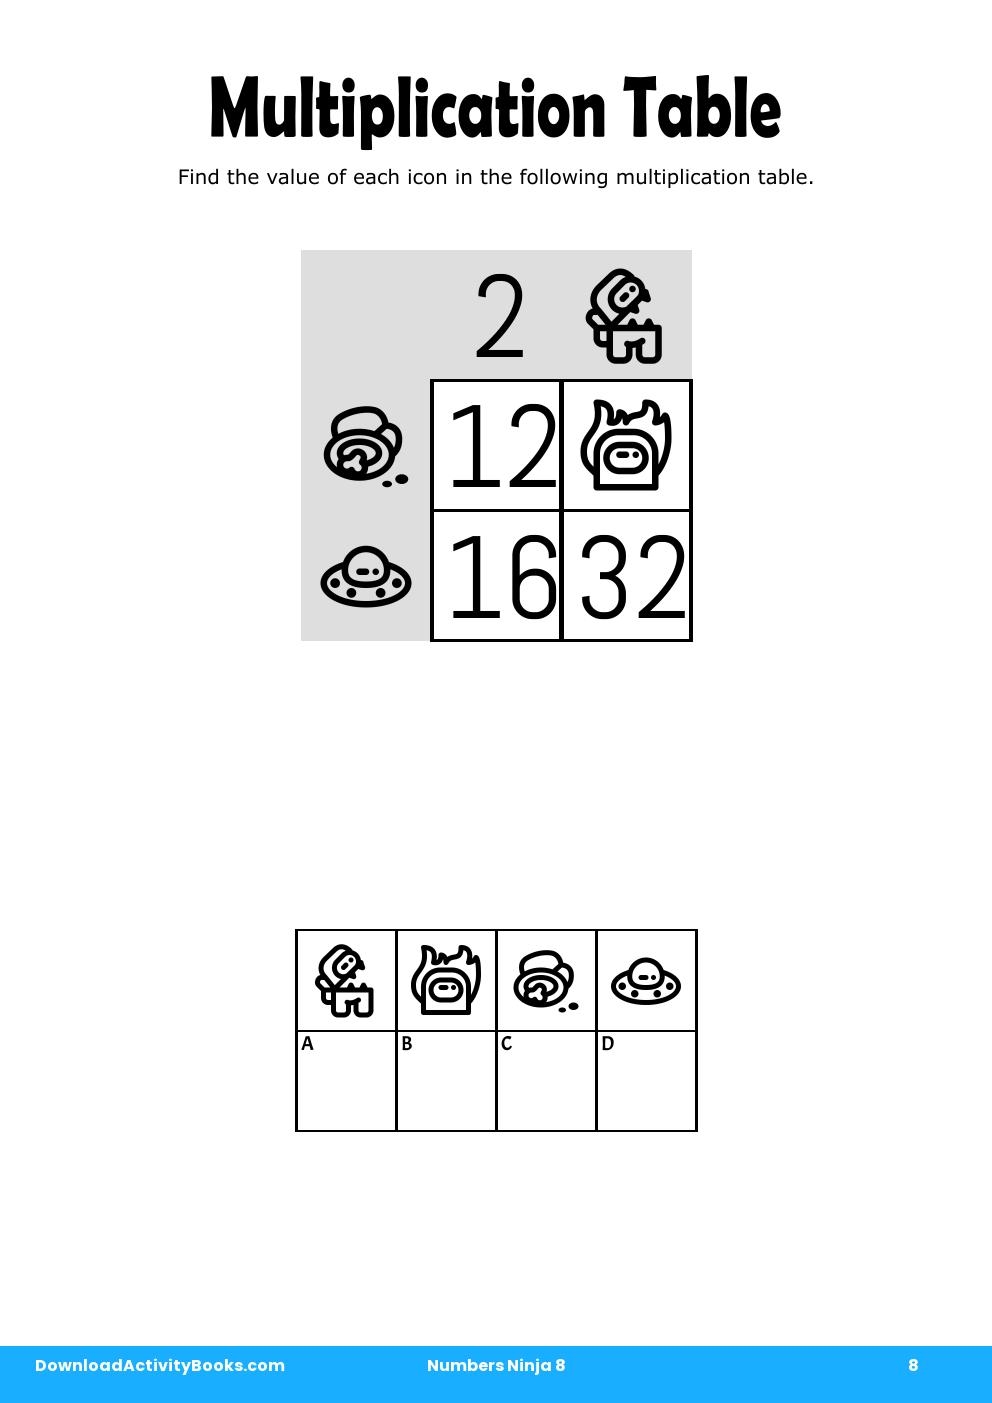 Multiplication Table in Numbers Ninja 8